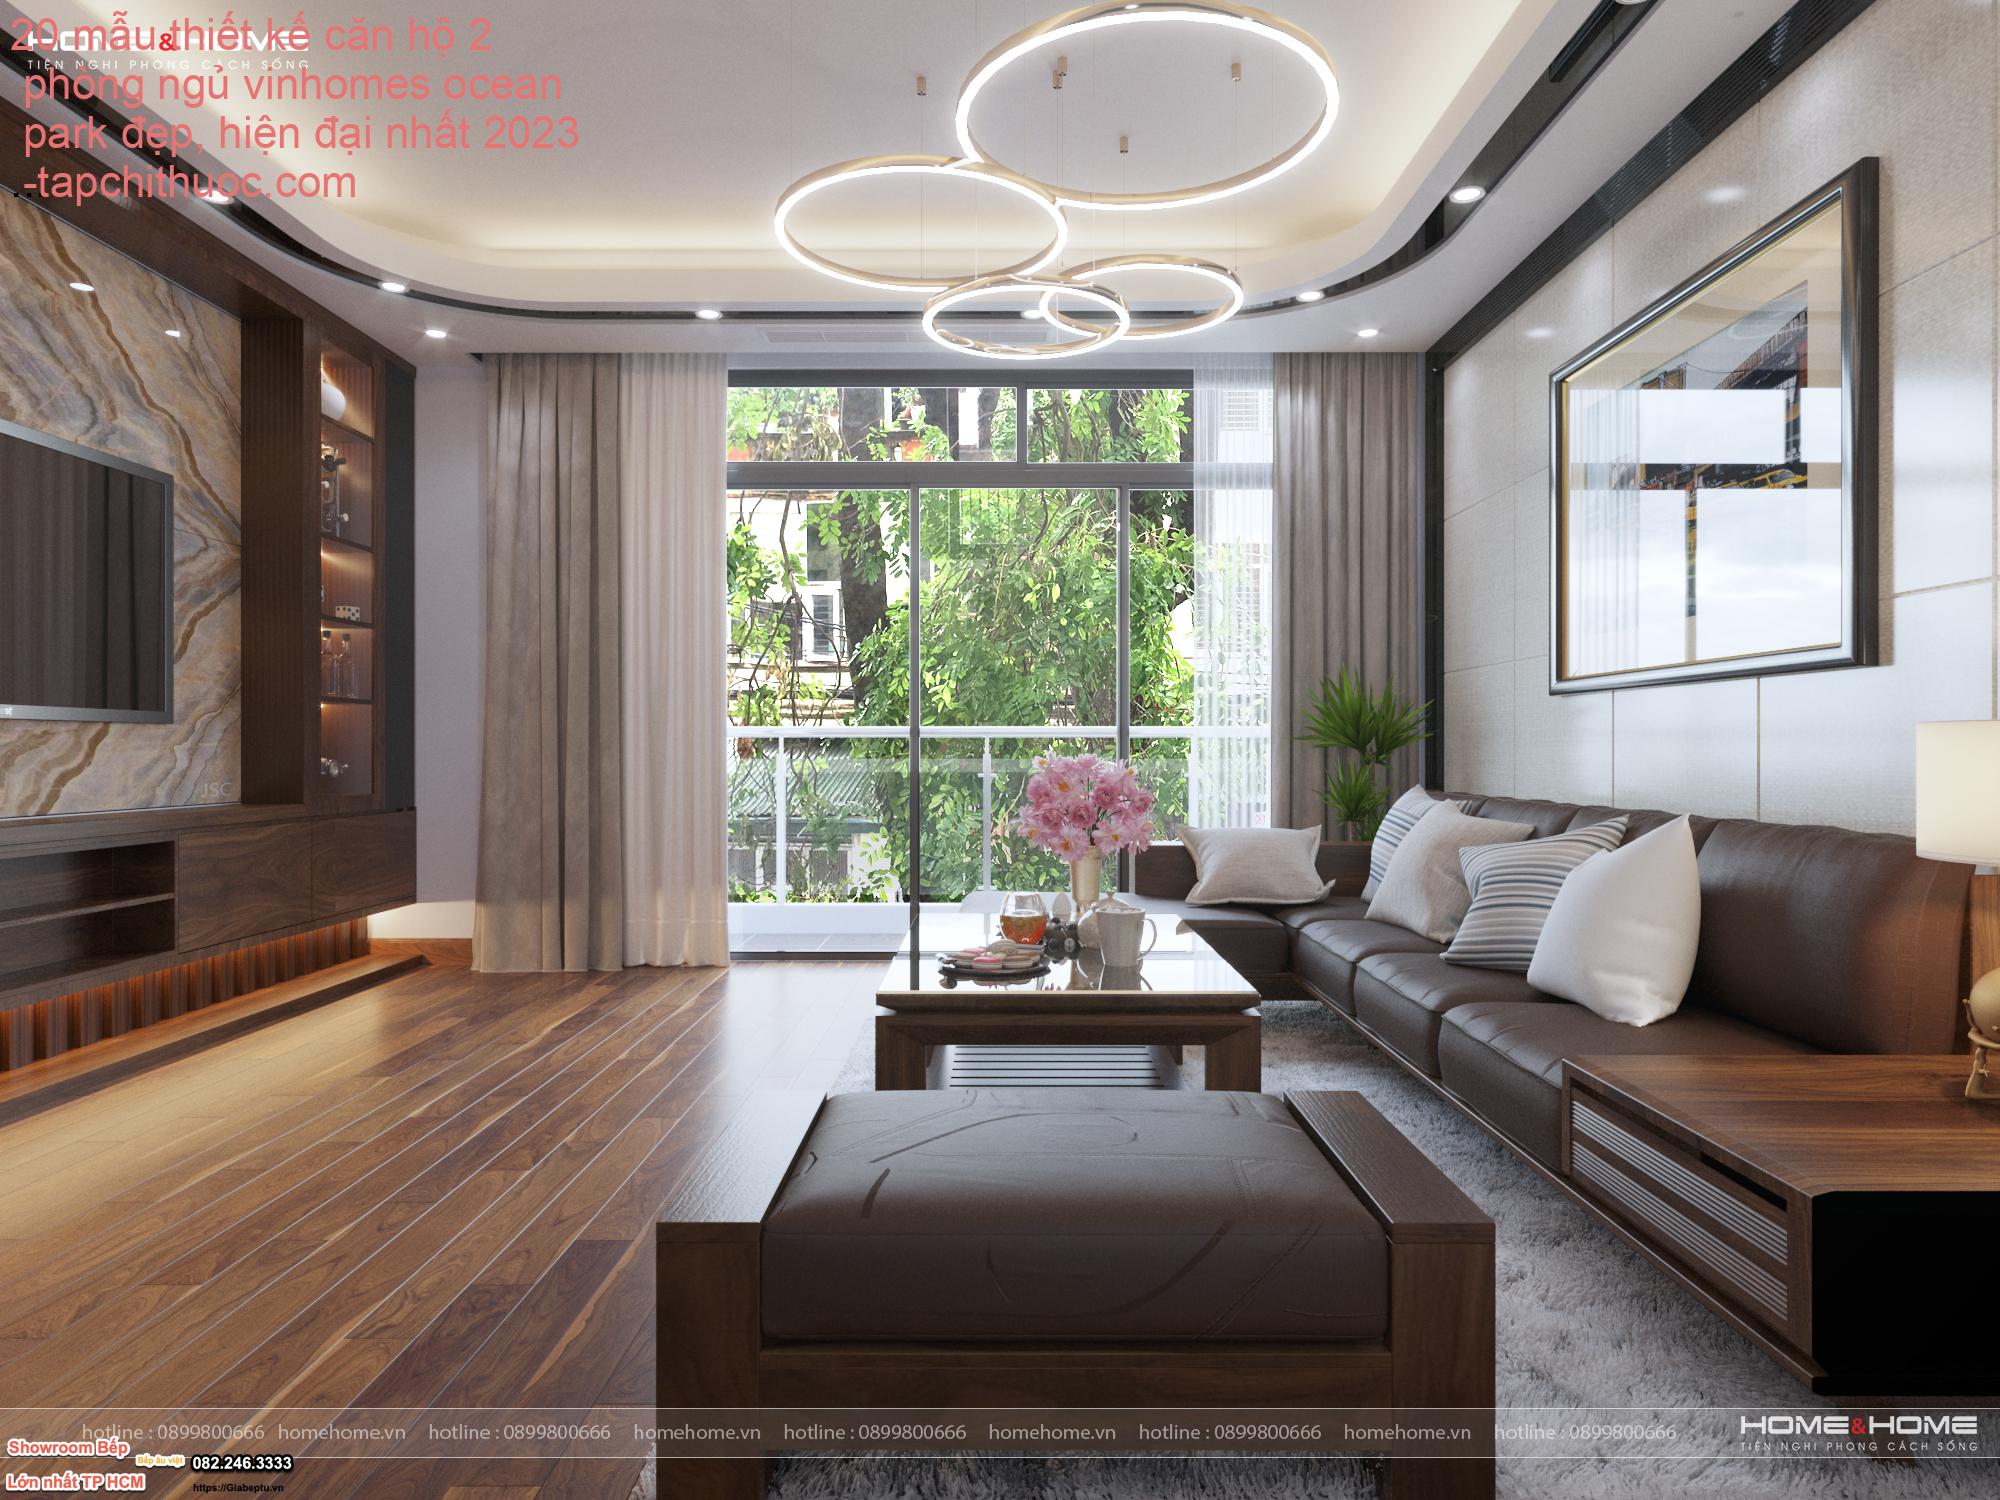 20 mẫu thiết kế căn hộ 2 phòng ngủ vinhomes ocean park đẹp, hiện đại nhất 2023